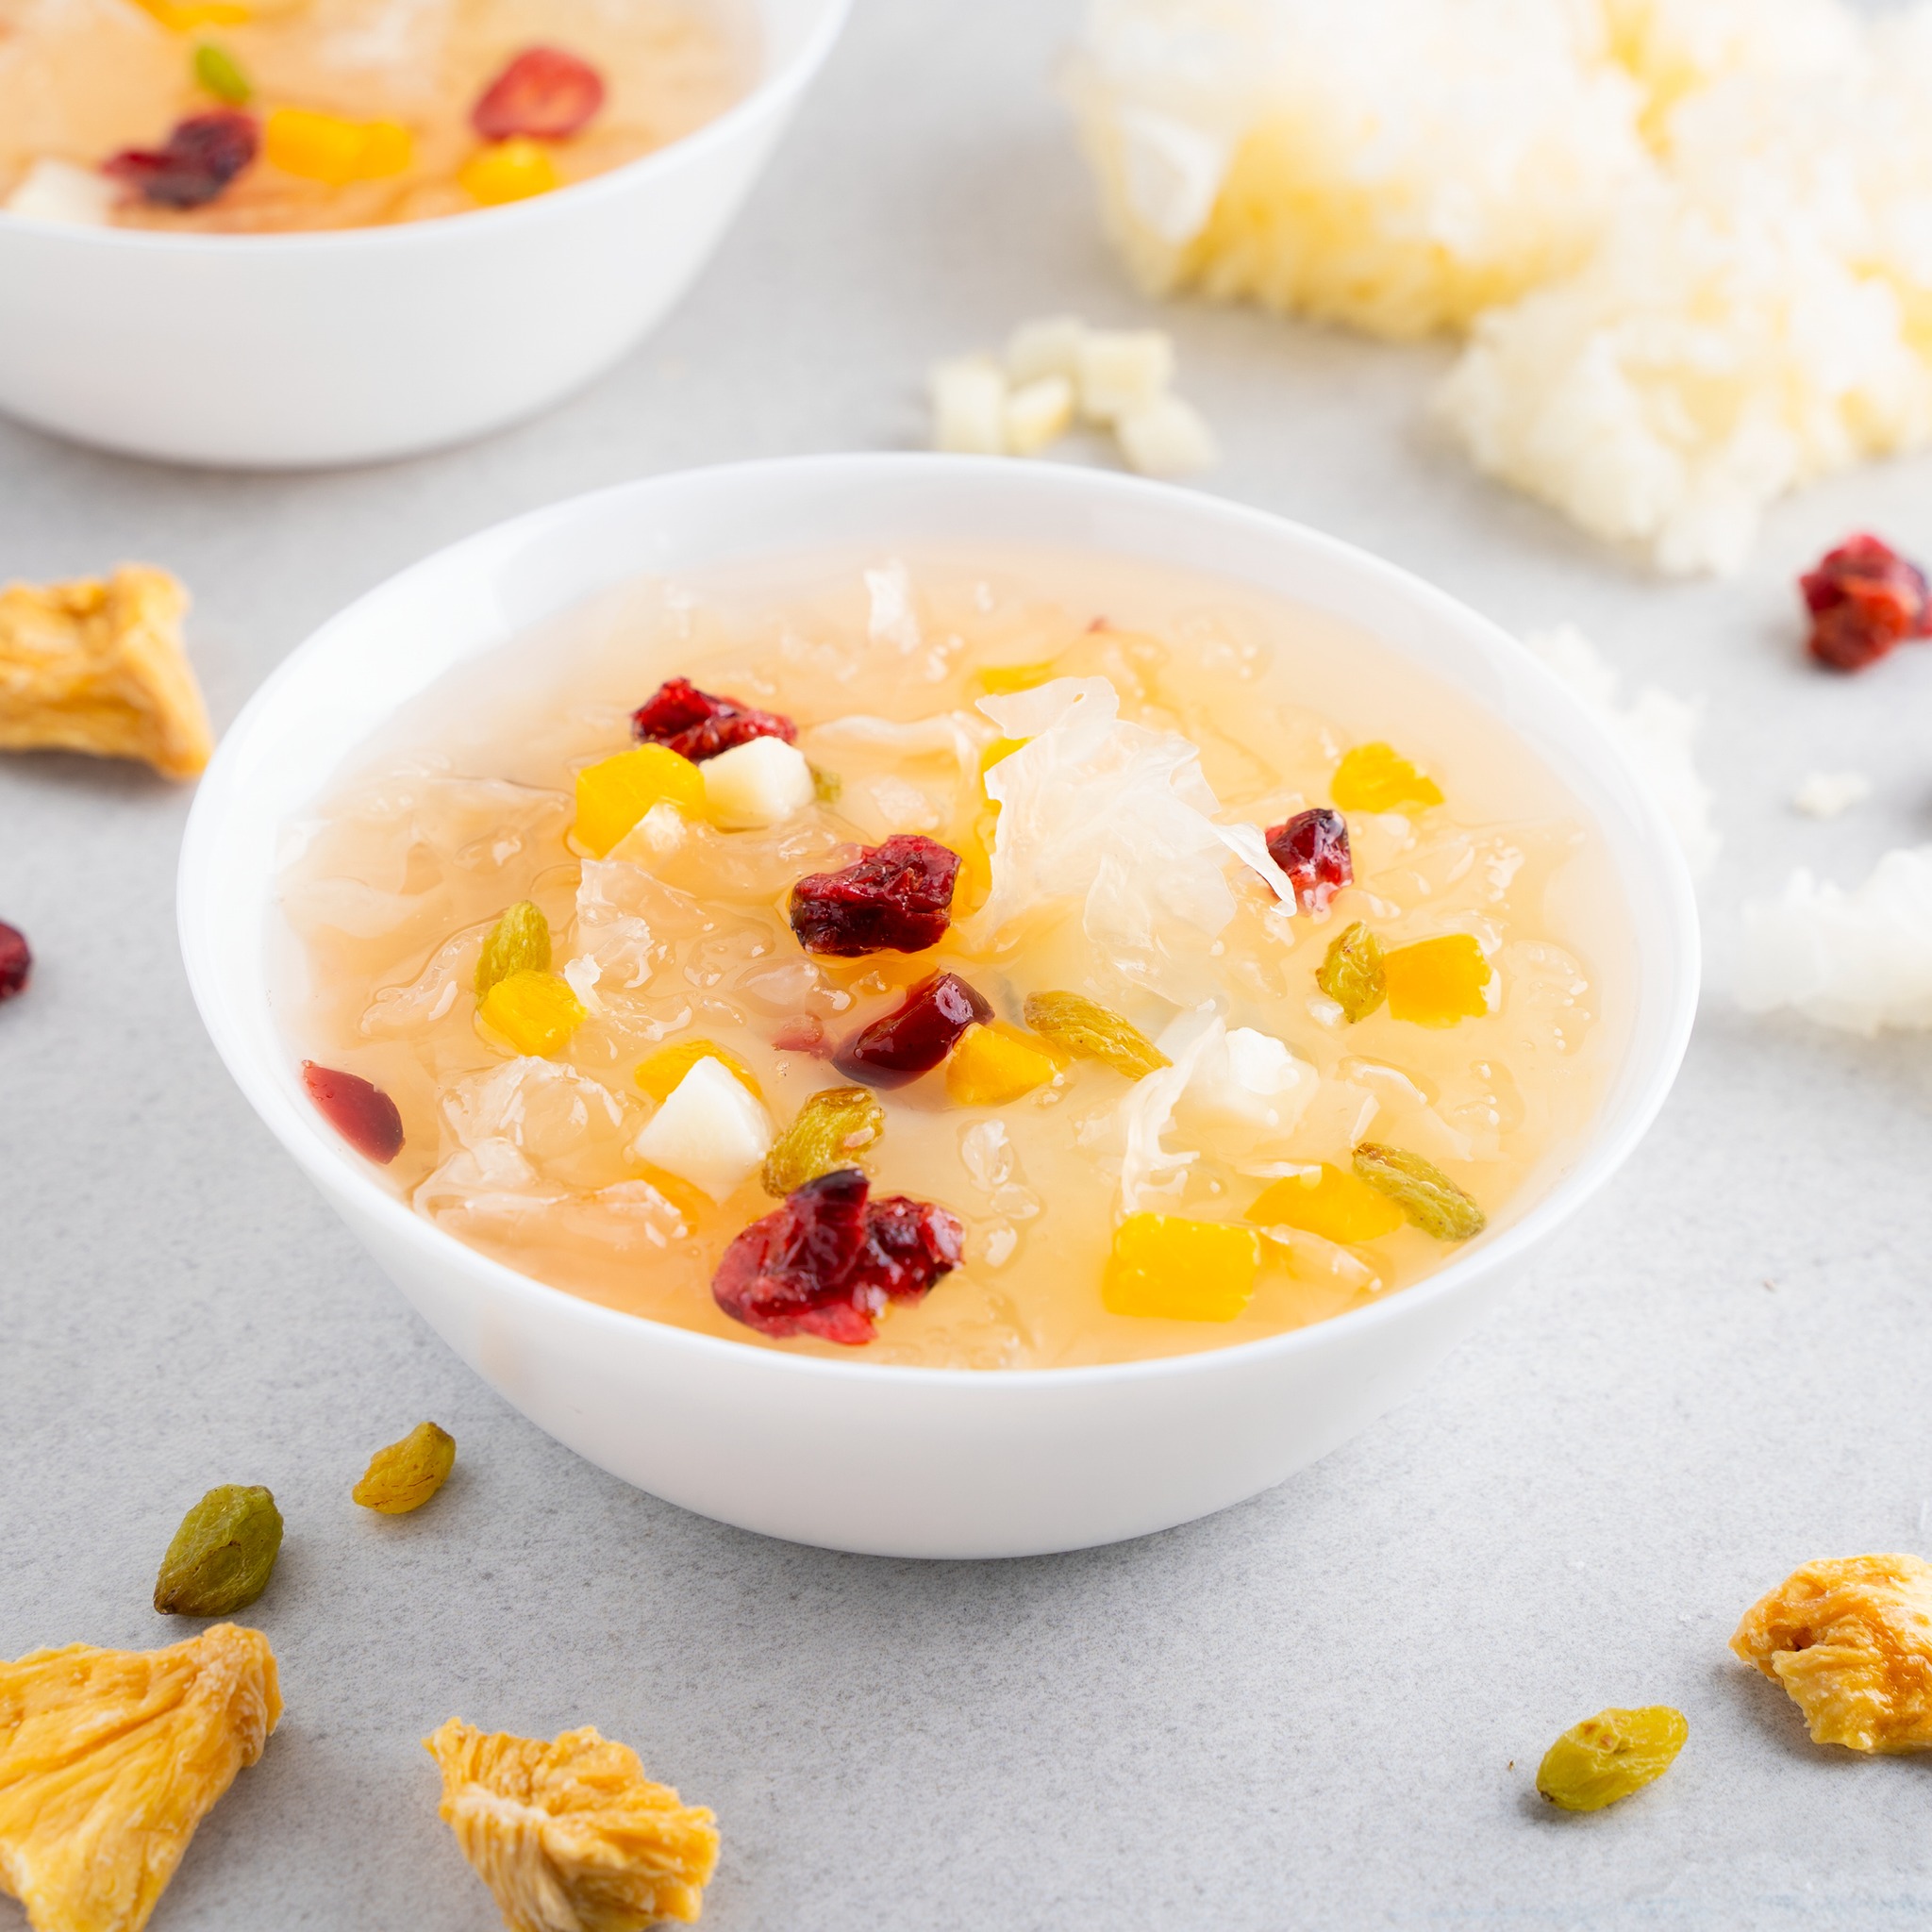 El mango Xiangcheng estrictamente seleccionado se combina con pulpa de pomelo rojo agridulce. Es dulce y tiene un encantador sabor ligeramente ácido que estimula las papilas gustativas. Agregar fruta QQ agrega interés masticable y capas. La suave leche de coco y la rica crema fresca agregan aroma, que es un santuario de verano al estilo de Nanyang. Cómo comer: (1) Póngalo en el refrigerador y descongélelo durante 3-5 horas (2) Descongélelo en agua del grifo durante 5-10 minutos